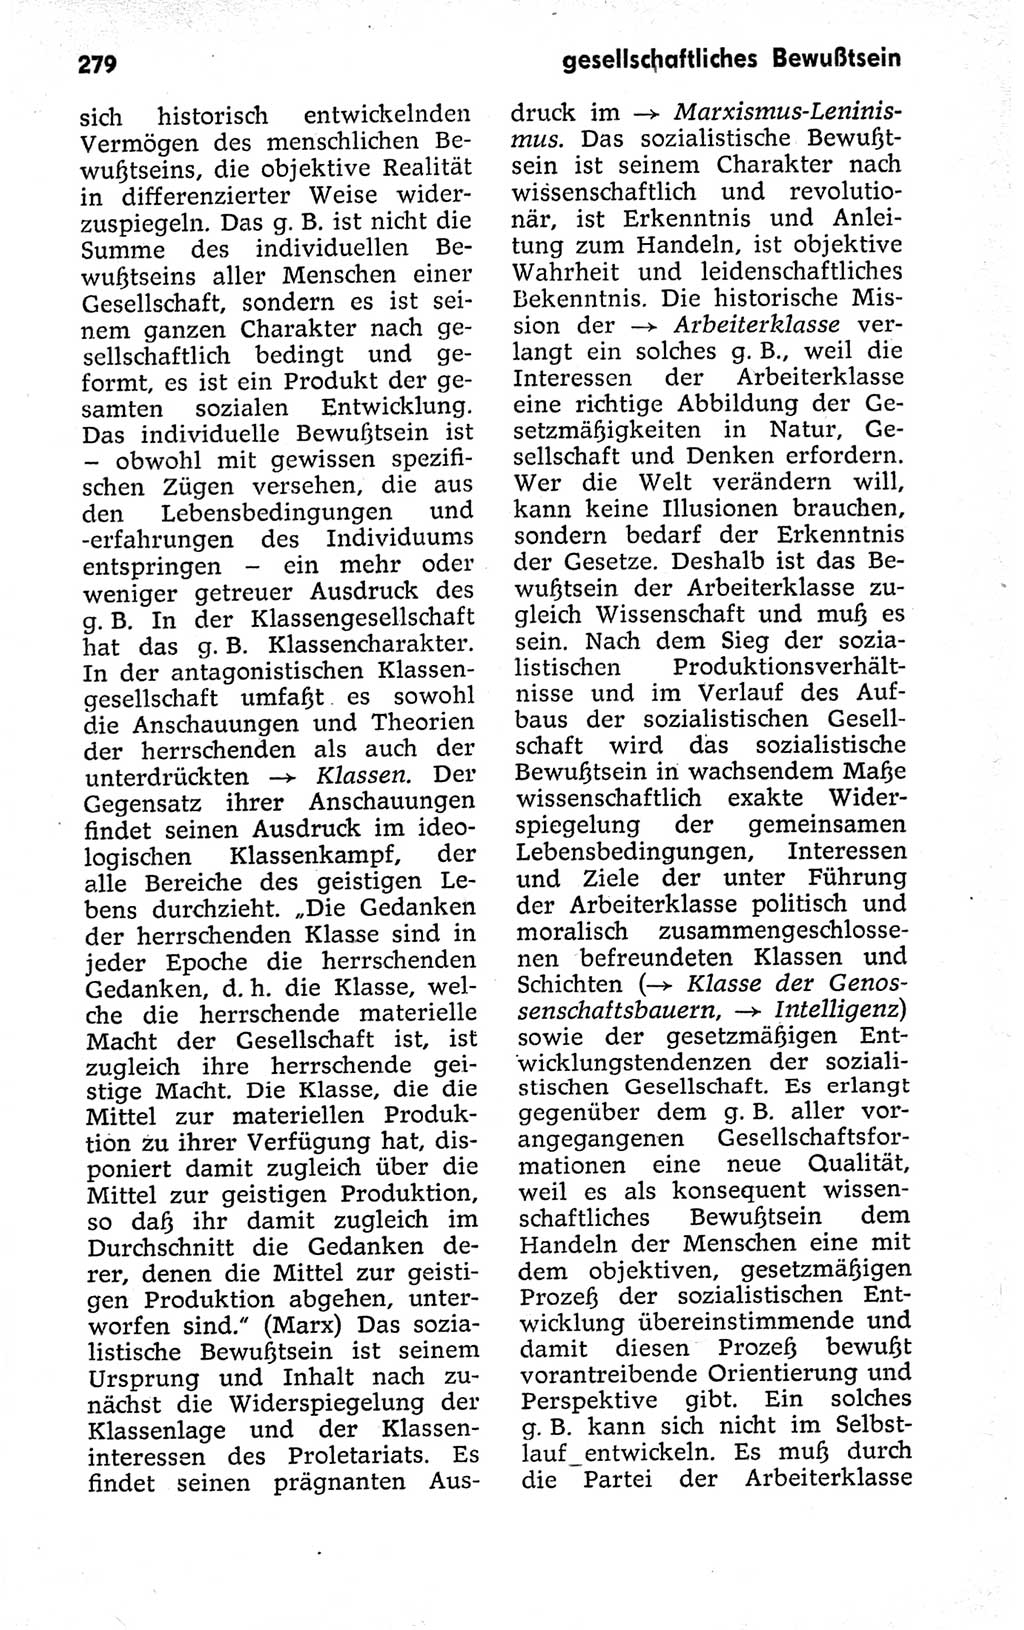 Kleines politisches Wörterbuch [Deutsche Demokratische Republik (DDR)] 1973, Seite 279 (Kl. pol. Wb. DDR 1973, S. 279)